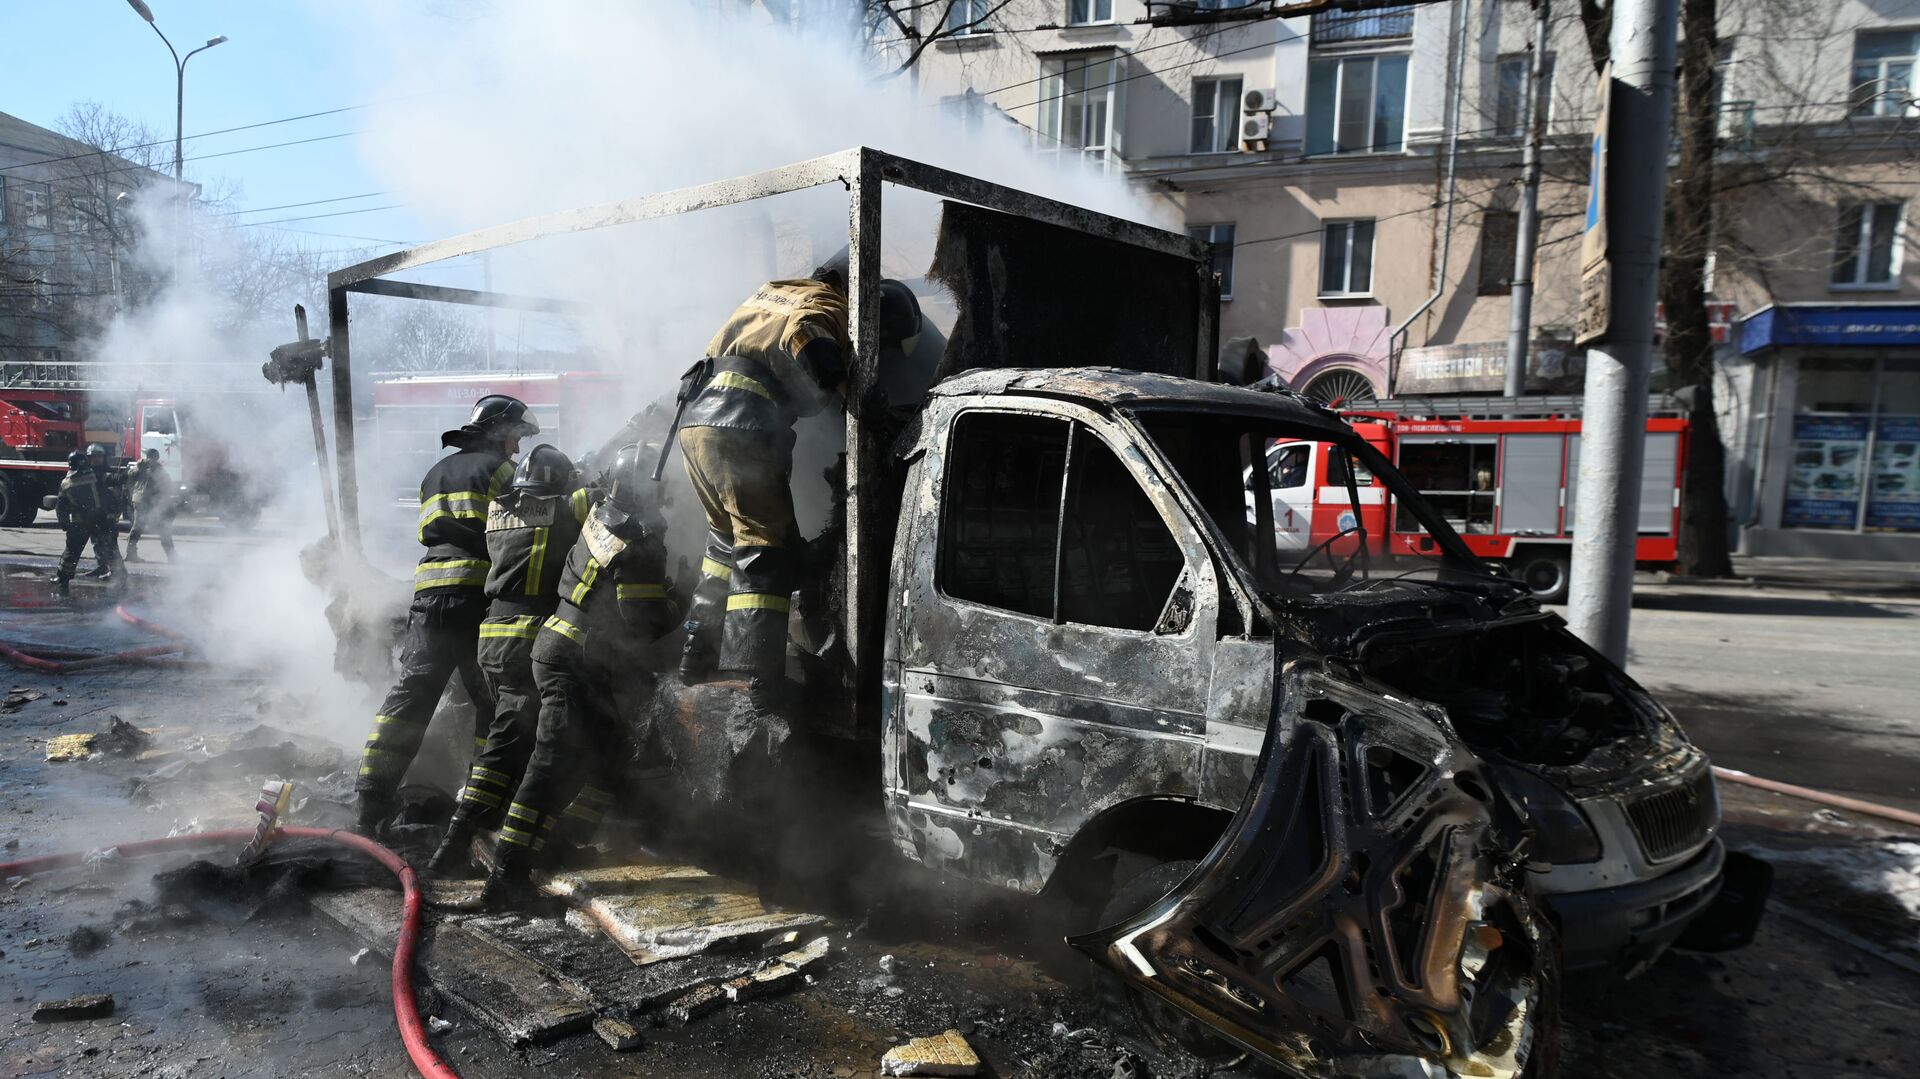 Сотрудники пожарной охраны у разрушенной машины в результате взрыва в центре Донецка - Sputnik Таджикистан, 1920, 06.04.2022